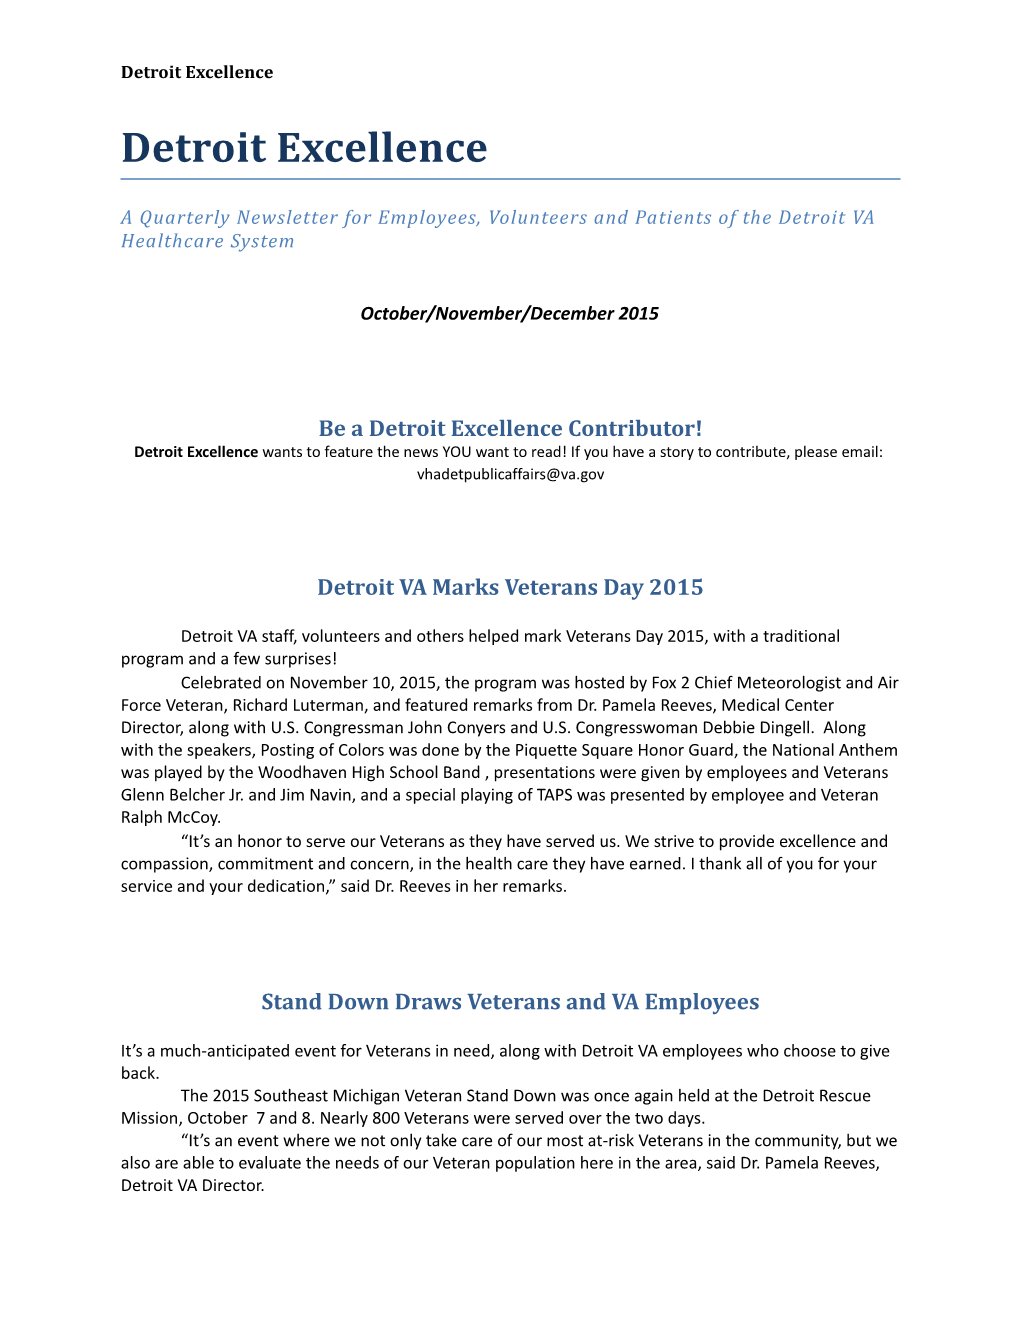 Detroit Excellence Oct-Dec 2015 -Text Version